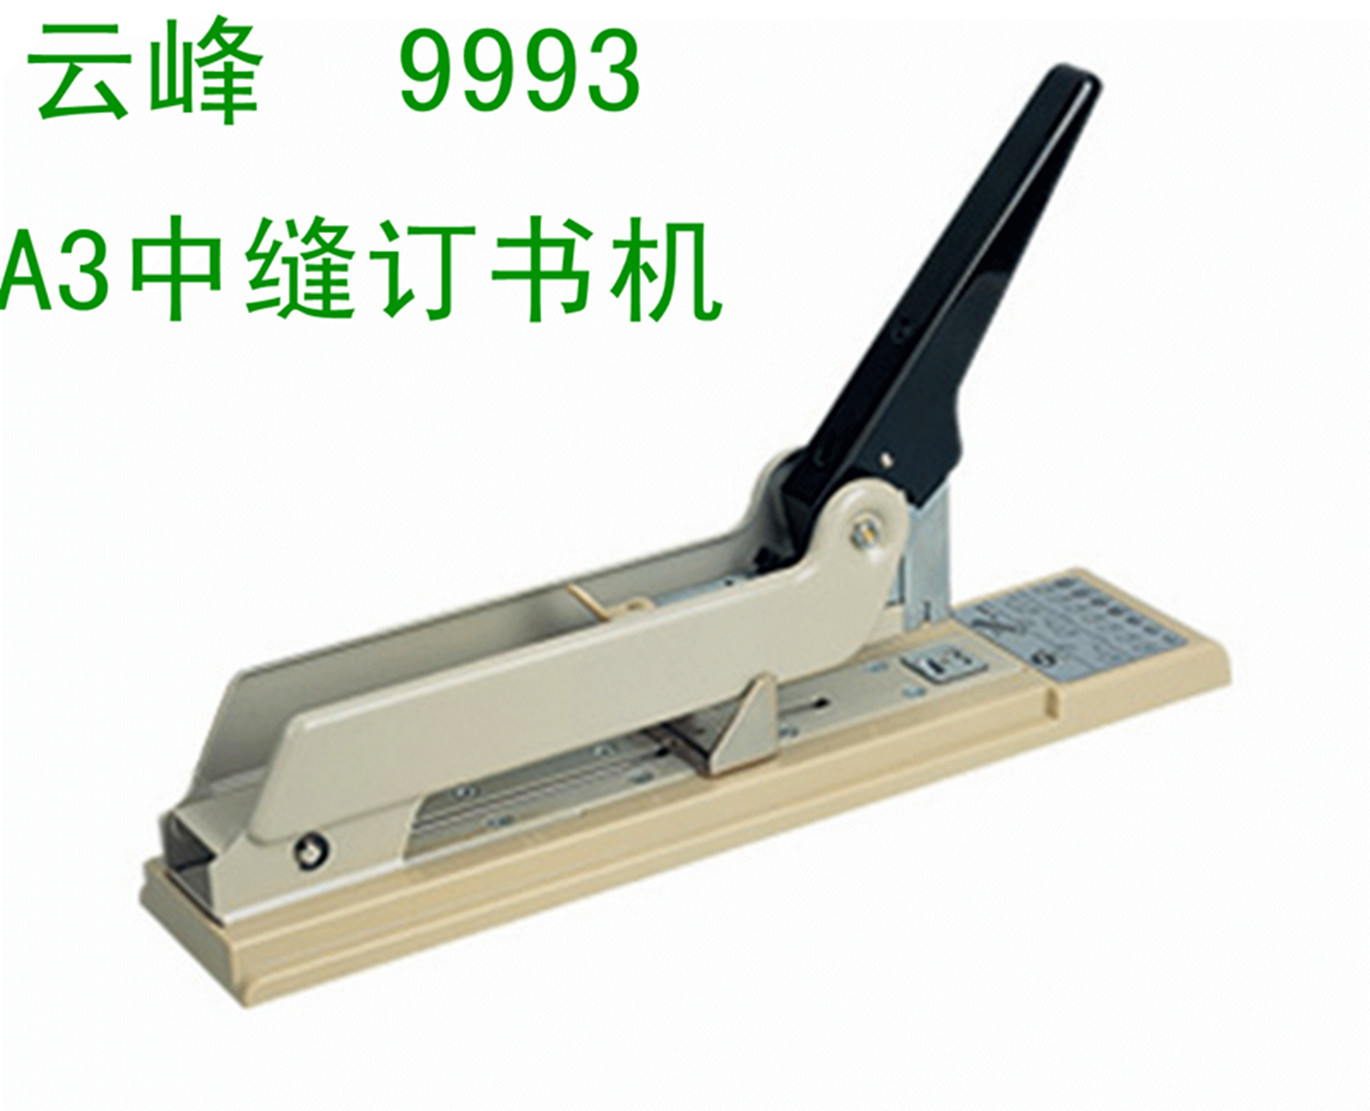 正品保证云峰YF9993加厚订书机重型厚层长臂订书机 可订180页